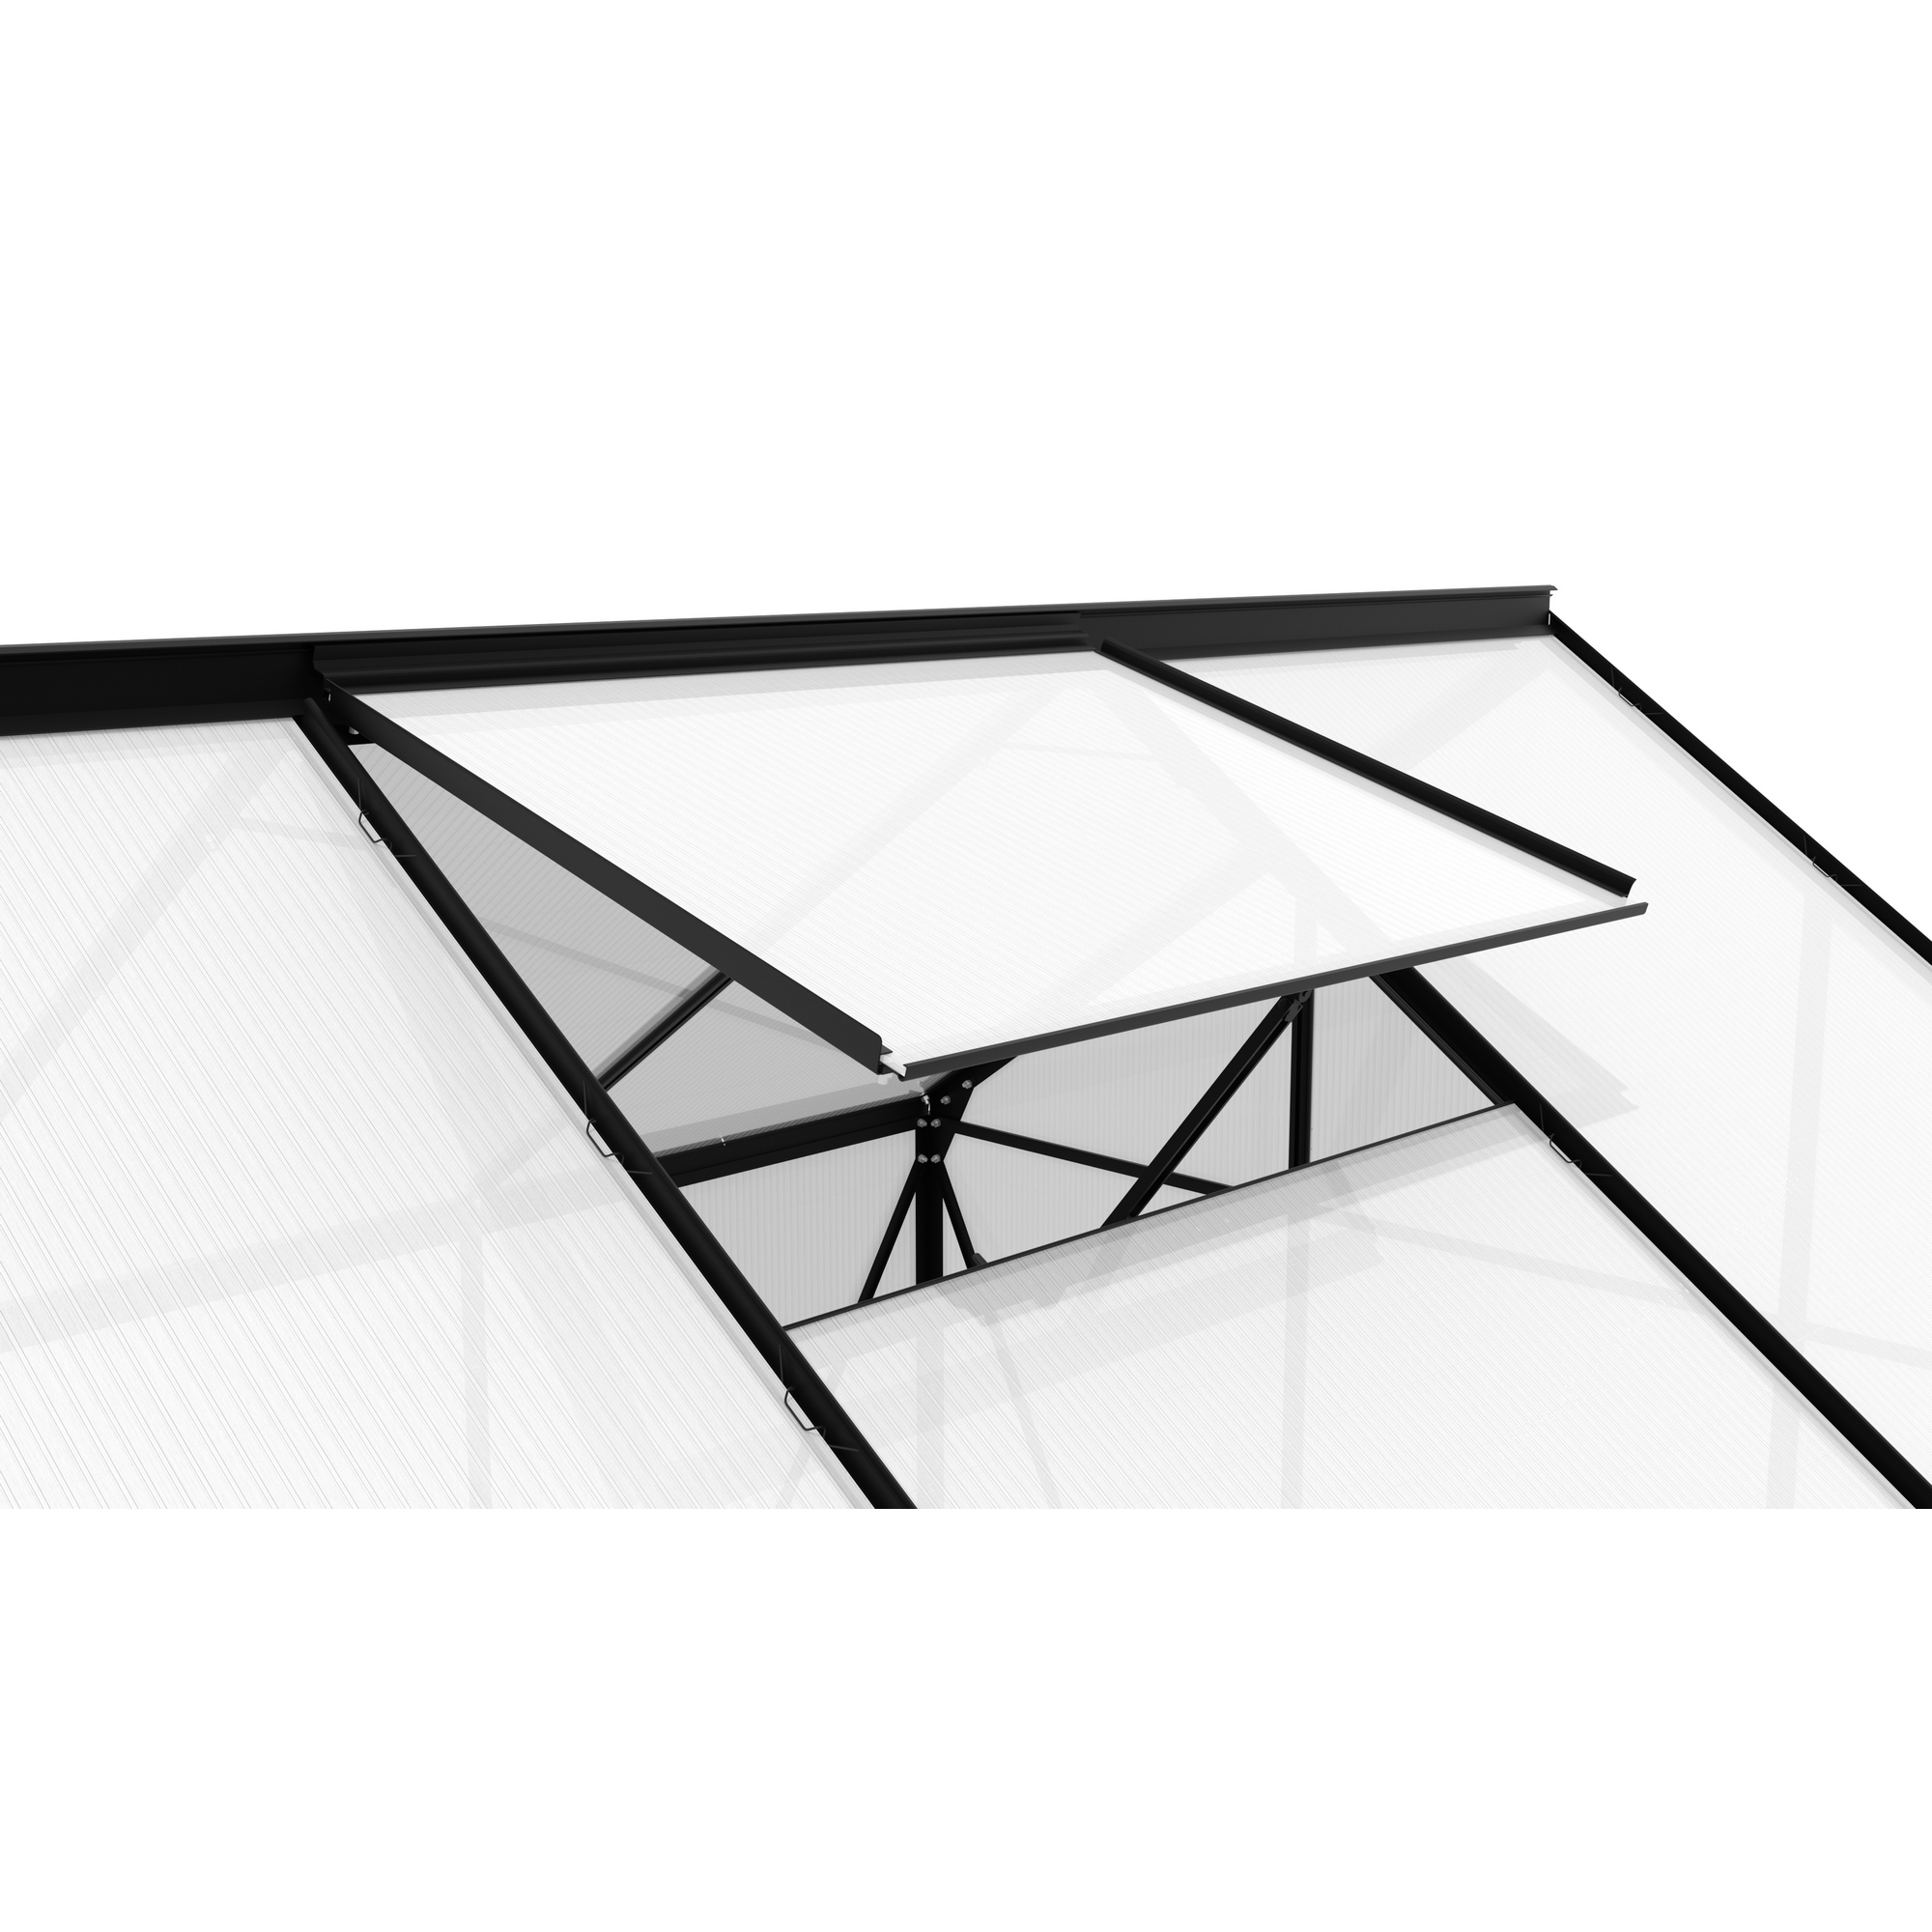 Dachfenster für Gewächshaus 'Calypso' Aluminium anthrazit 73,6 x 57,3 cm + product picture